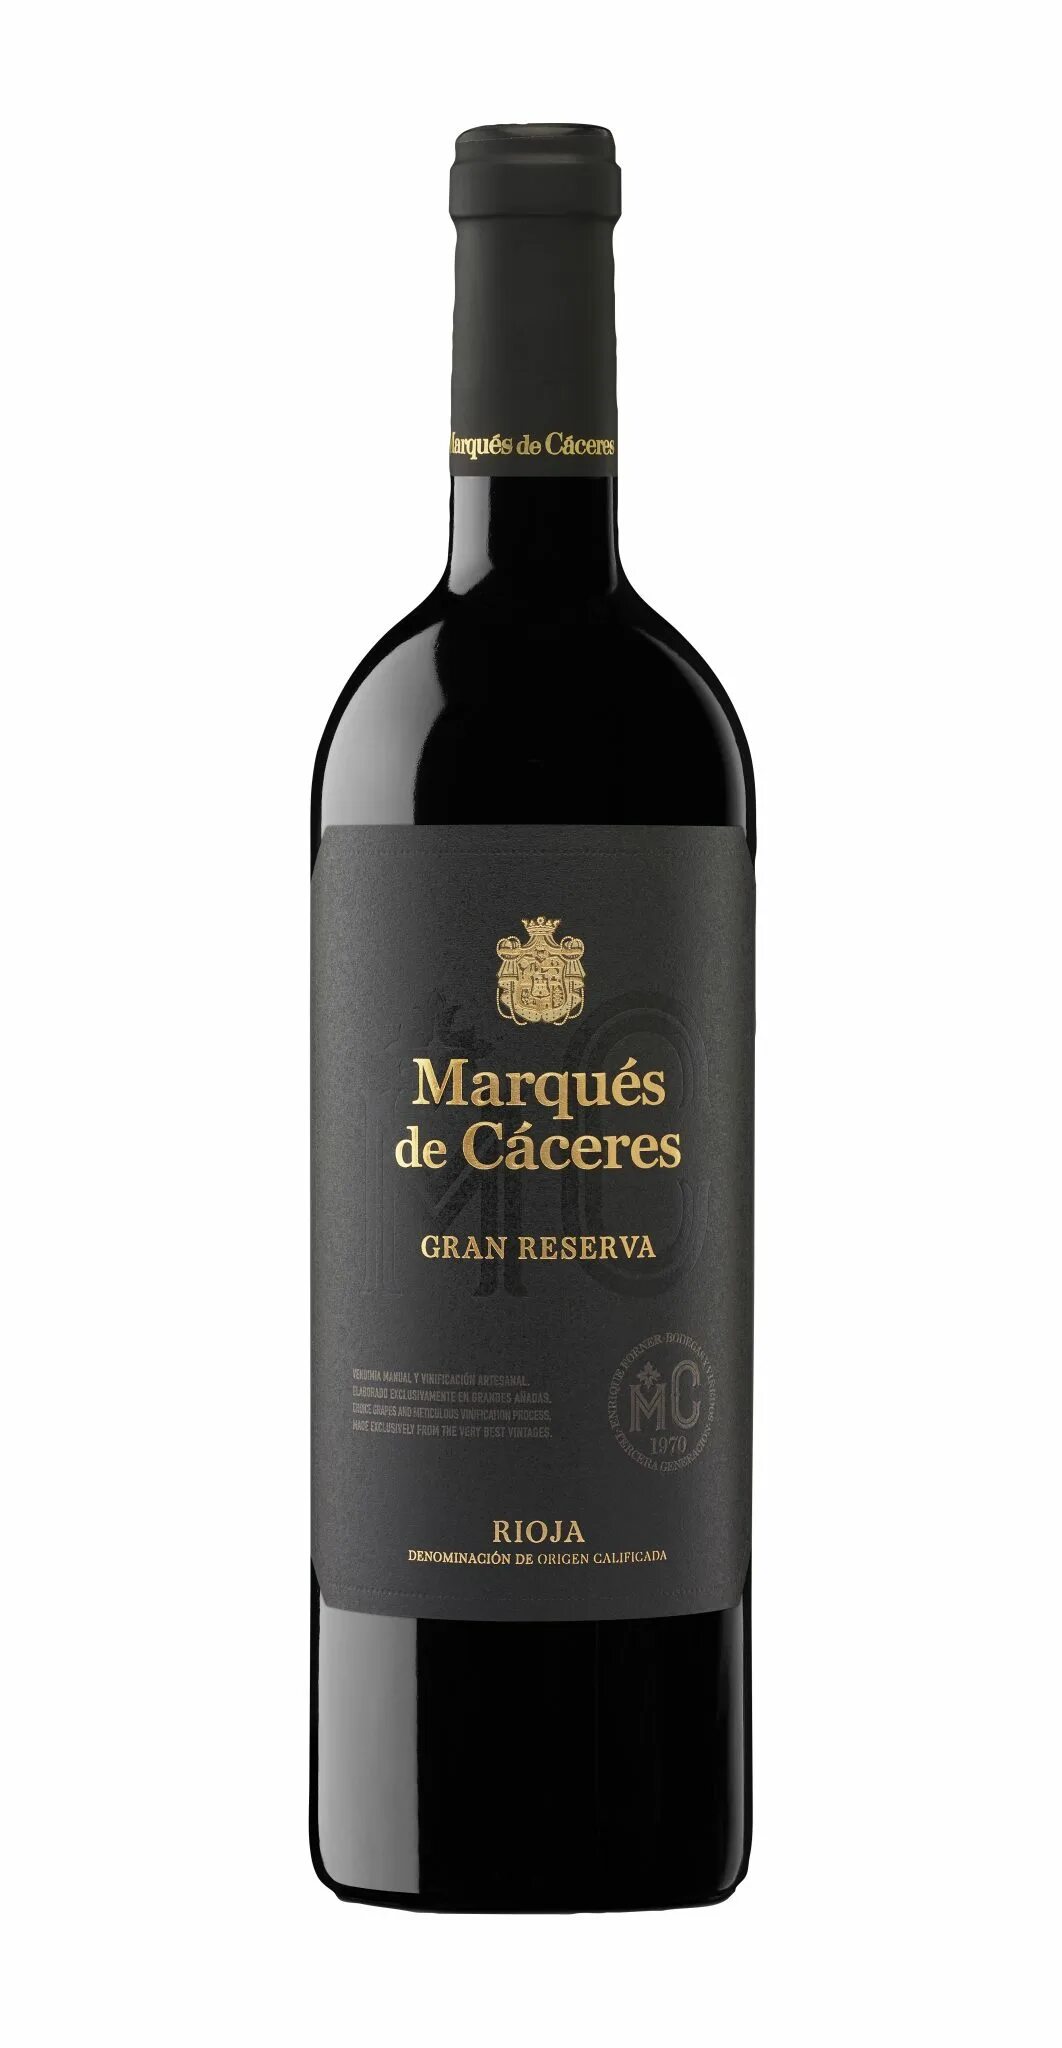 Marques de caceres. Вино marques de Caceres. Marques Rioja вино. Marques de Caceres, Crianza (Испания).. Вино marques de Vargas reserva 2016.